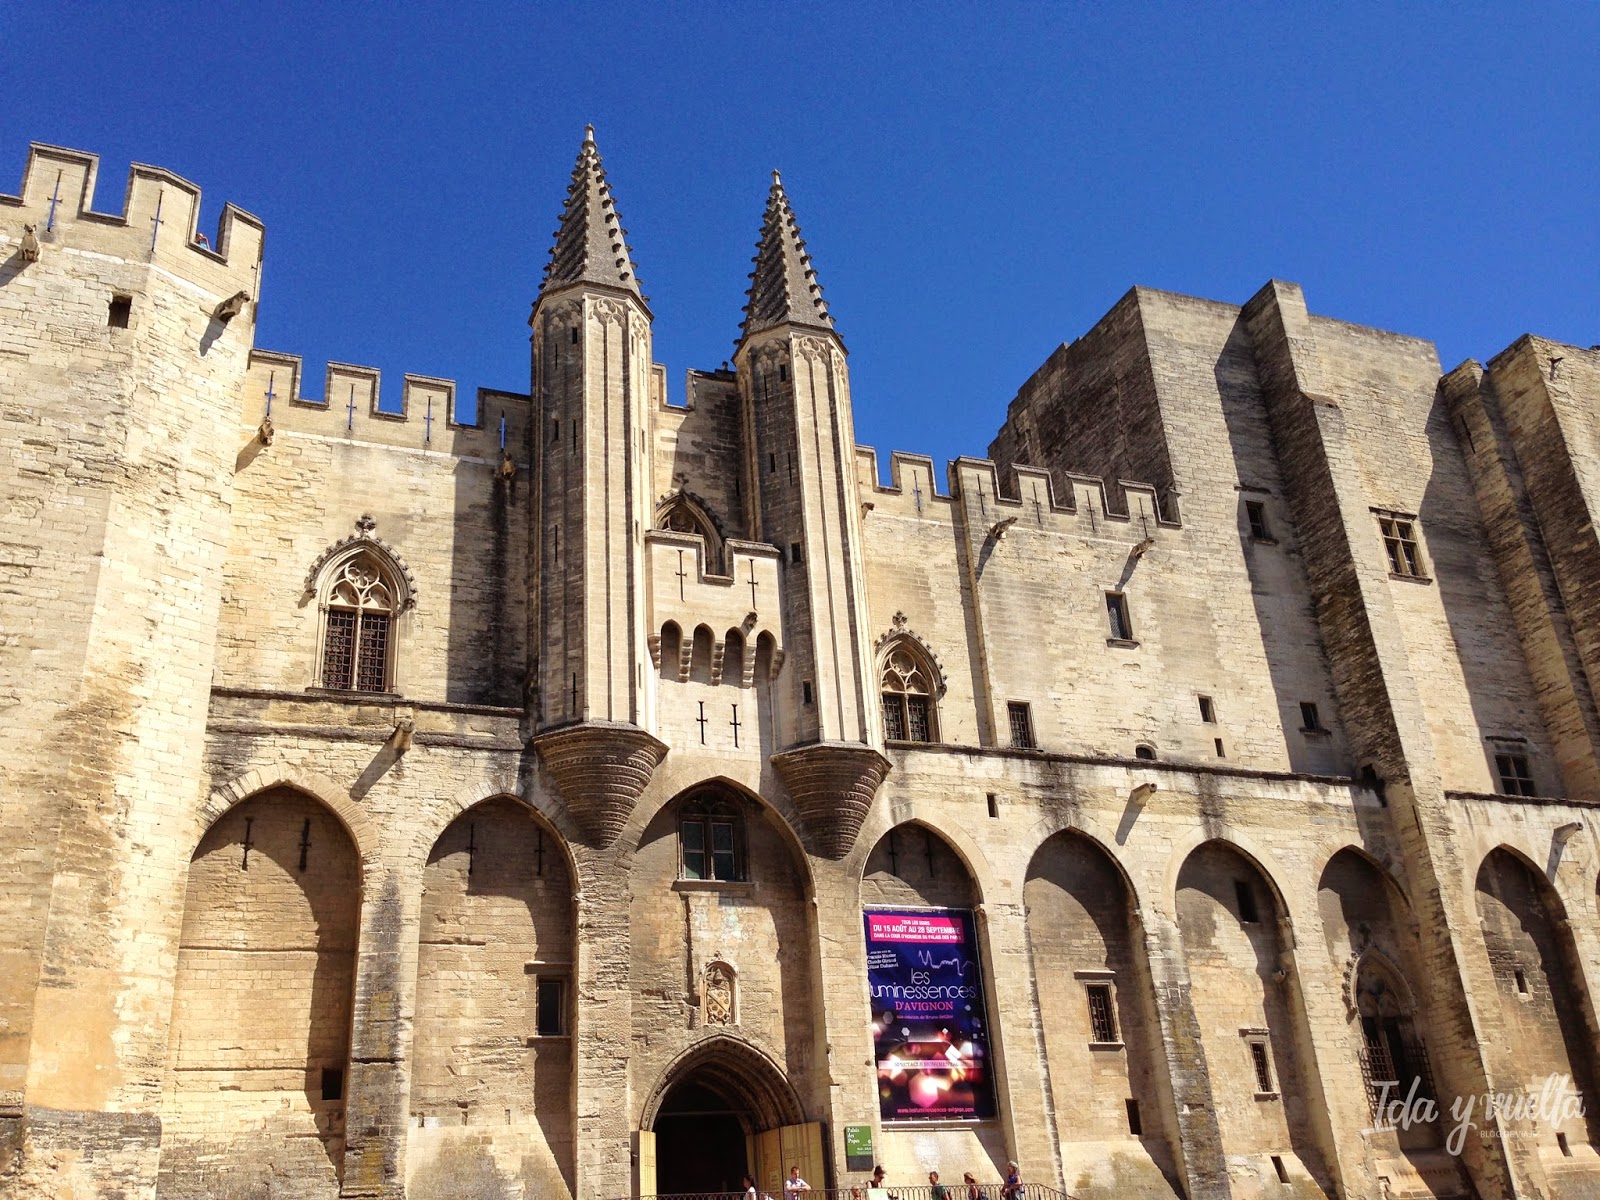 Palacio de los Papas en Avignon